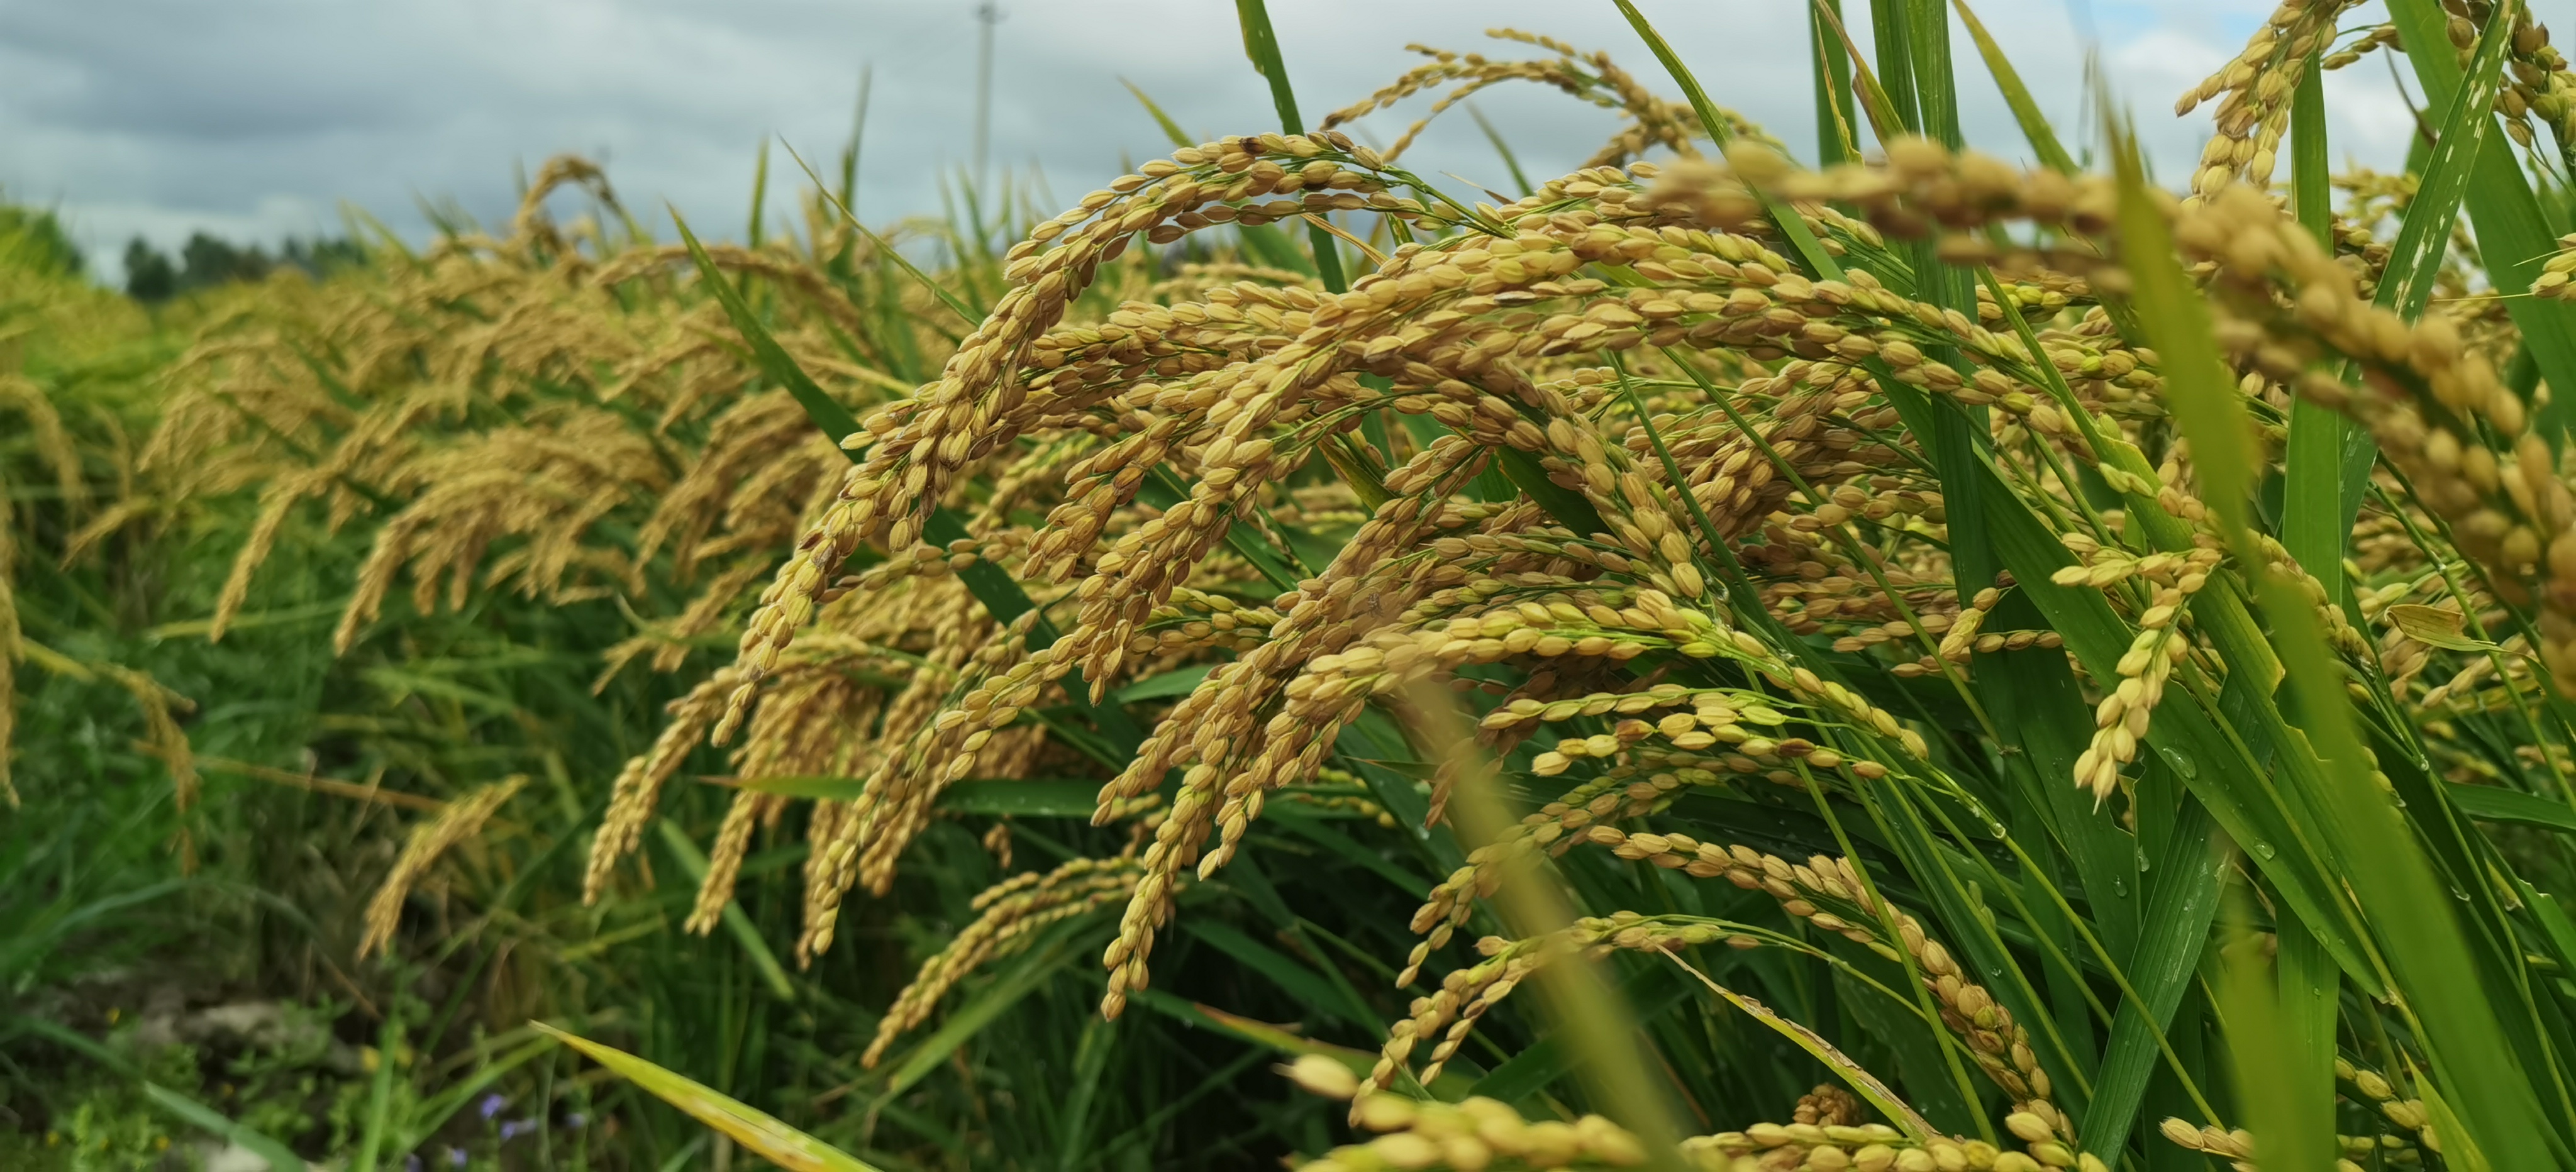 龙粳4569水稻品种图片